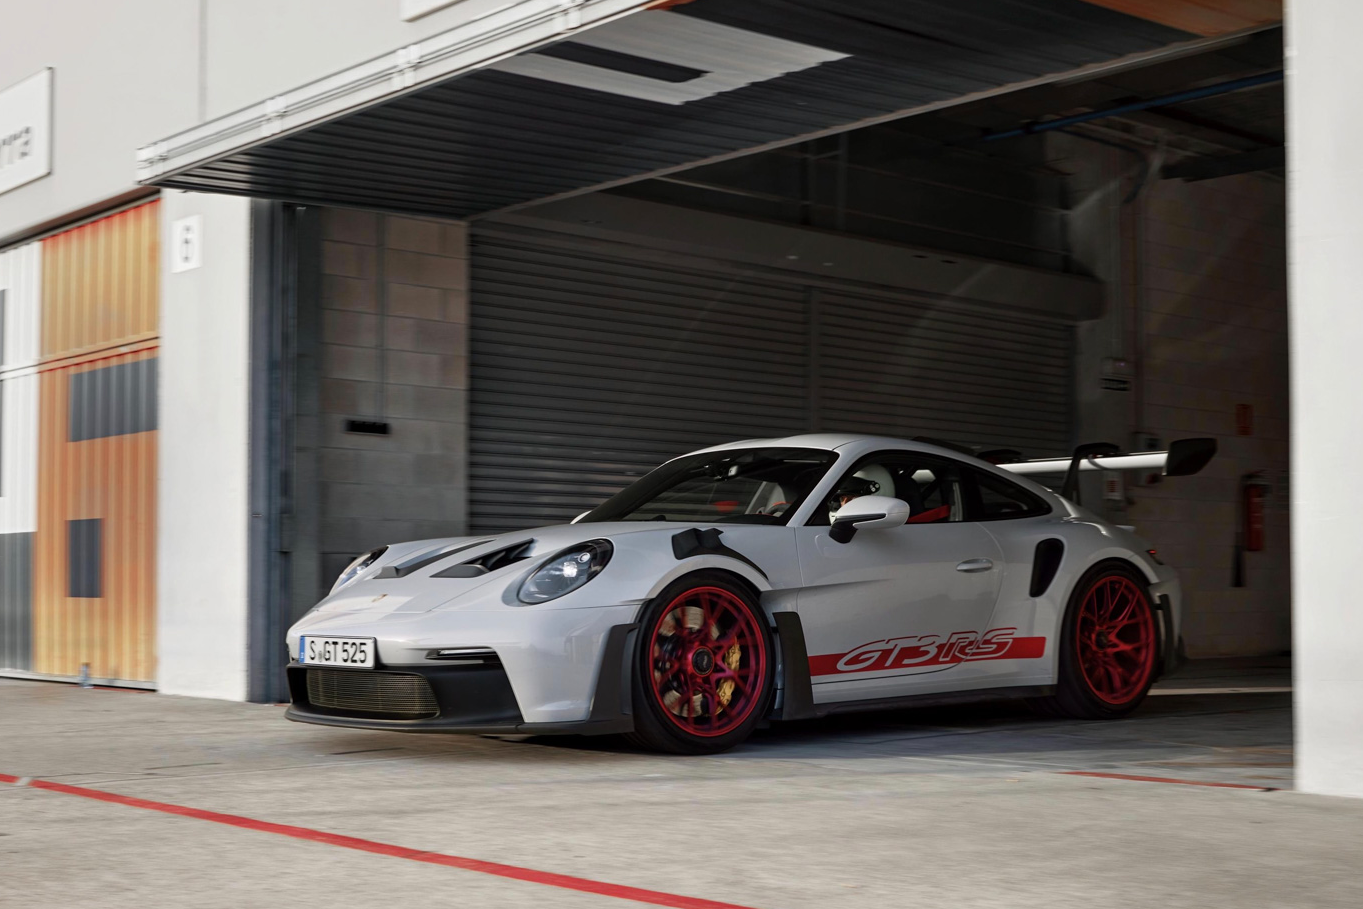 Chi tiết Porsche 911 GT3 RS thế hệ mới - ảnh 16